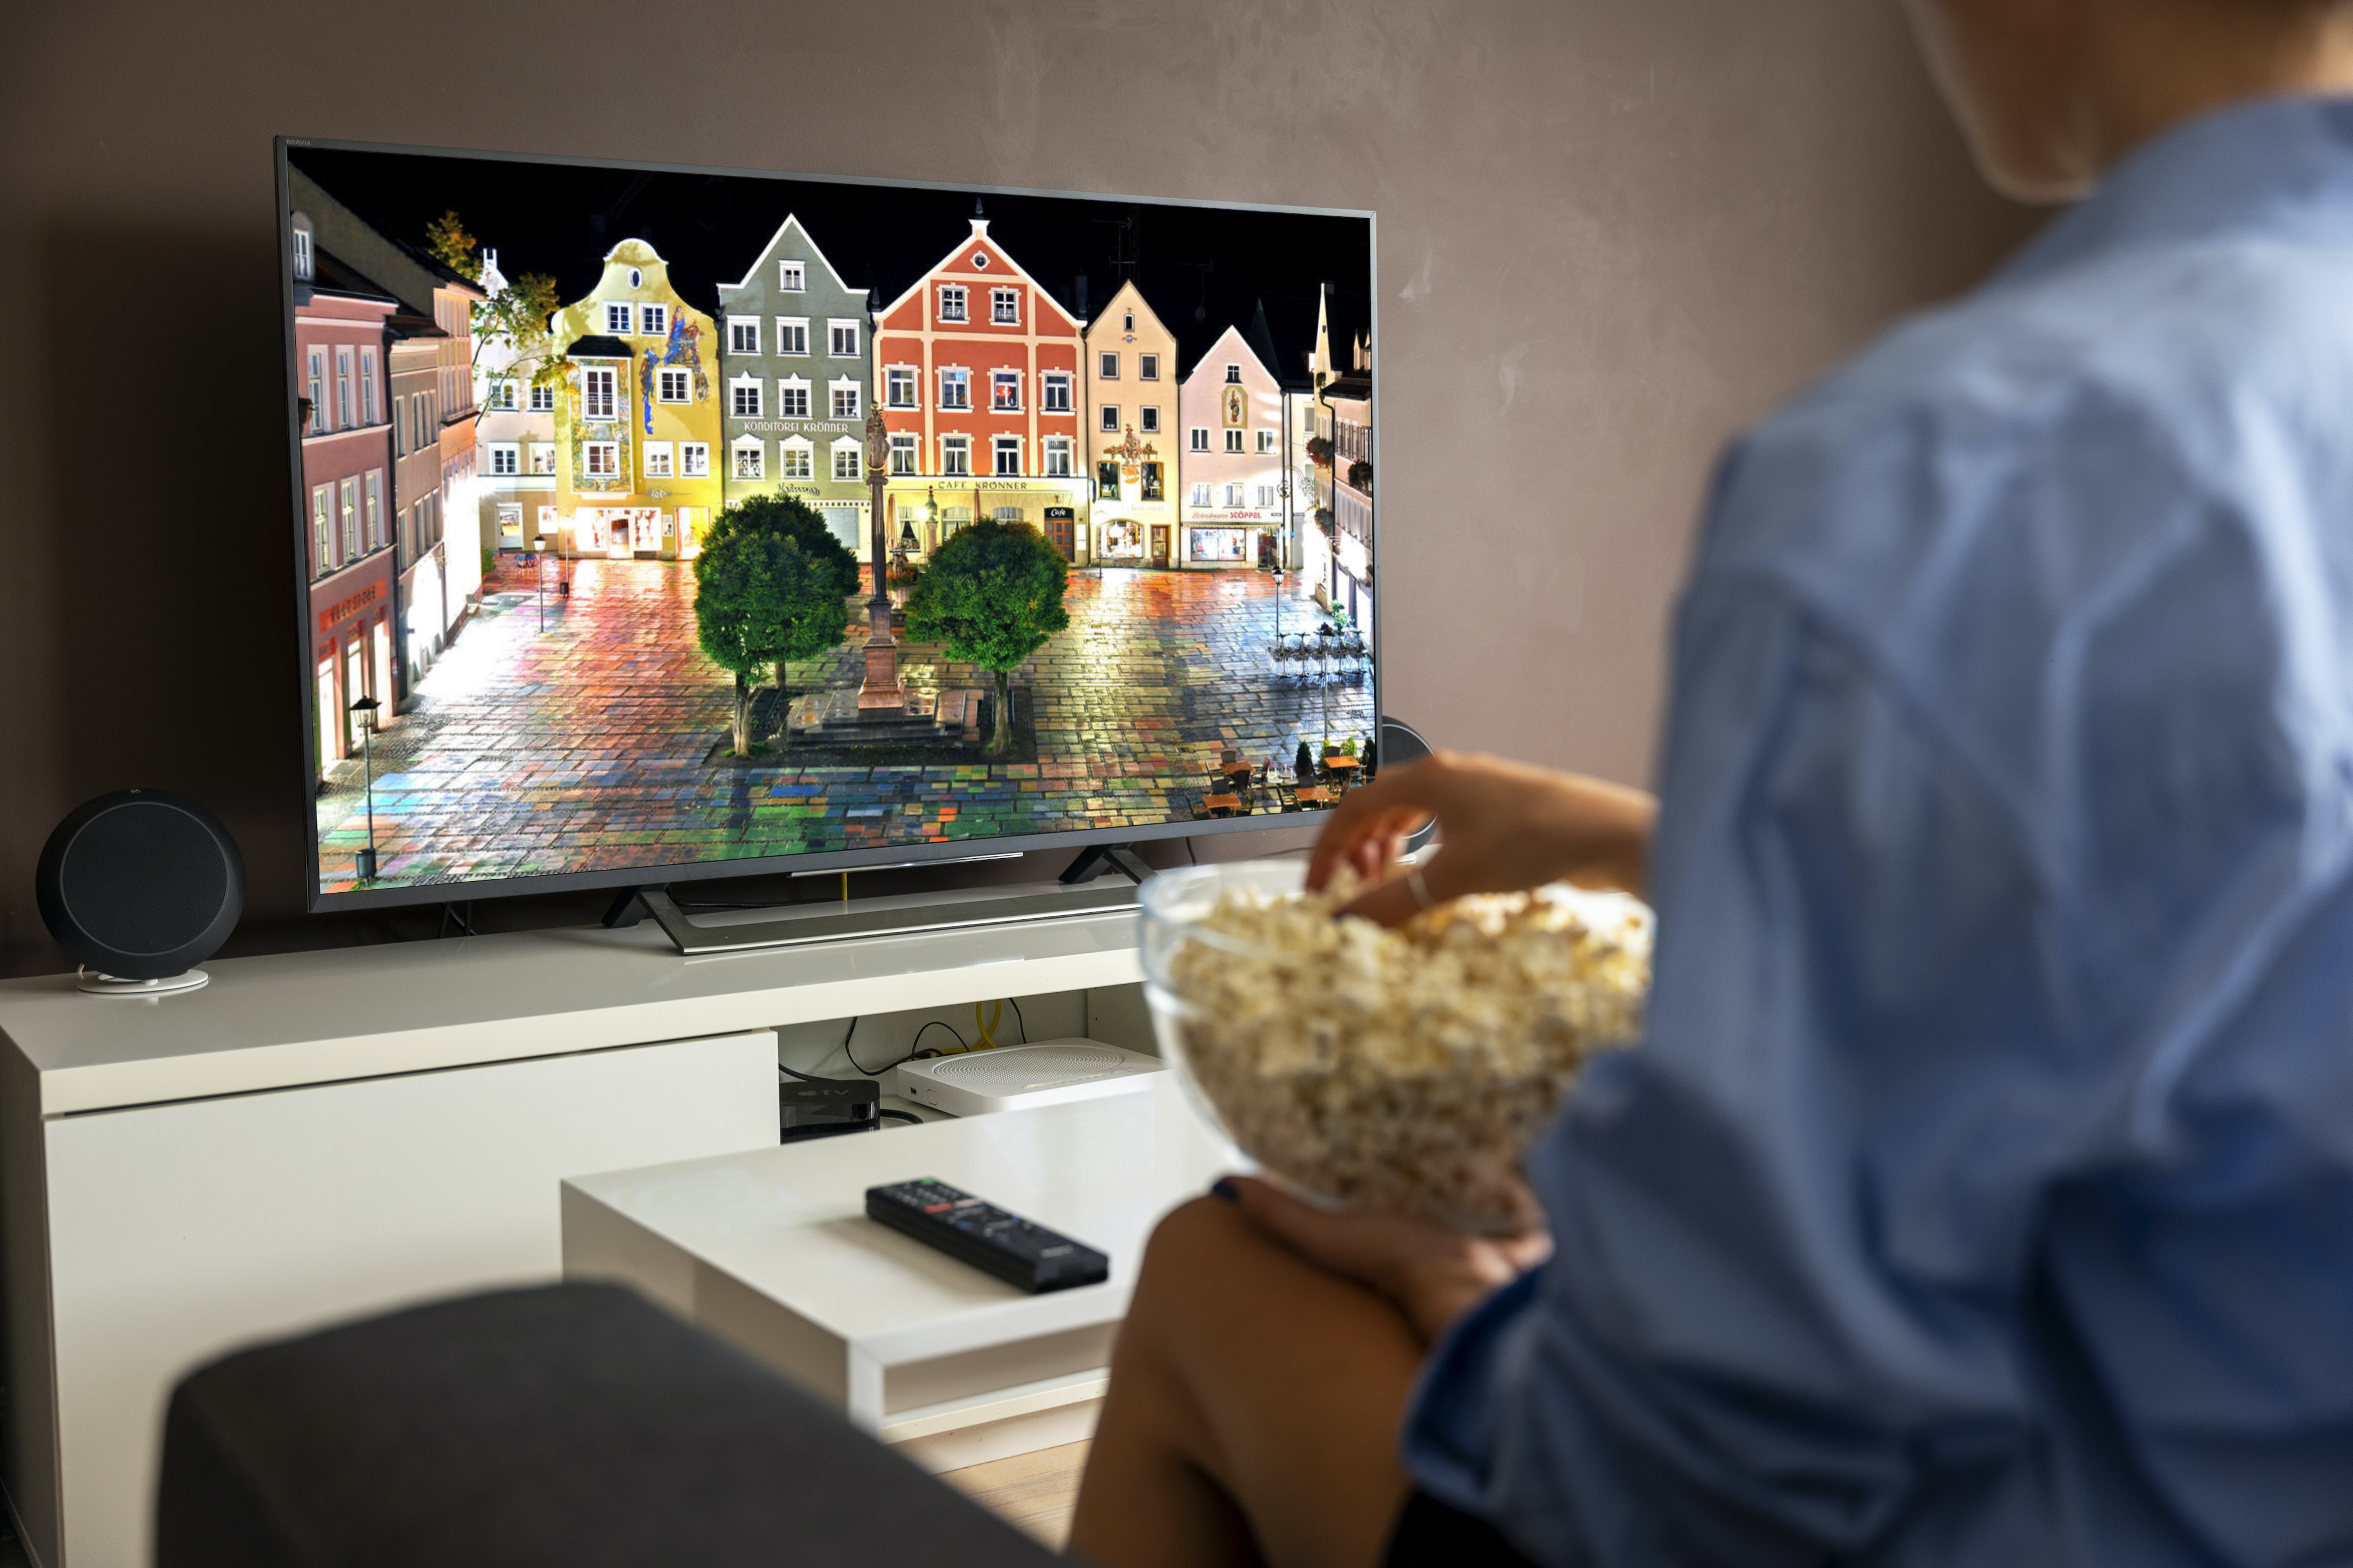 Smart TV on the white TV unit beside the woman eating popcorn_969156914-kommunalwahl-2020-weilheim-sind-buergermeisterkandidaten-in-weilheim-2uNyk0QtRrfe